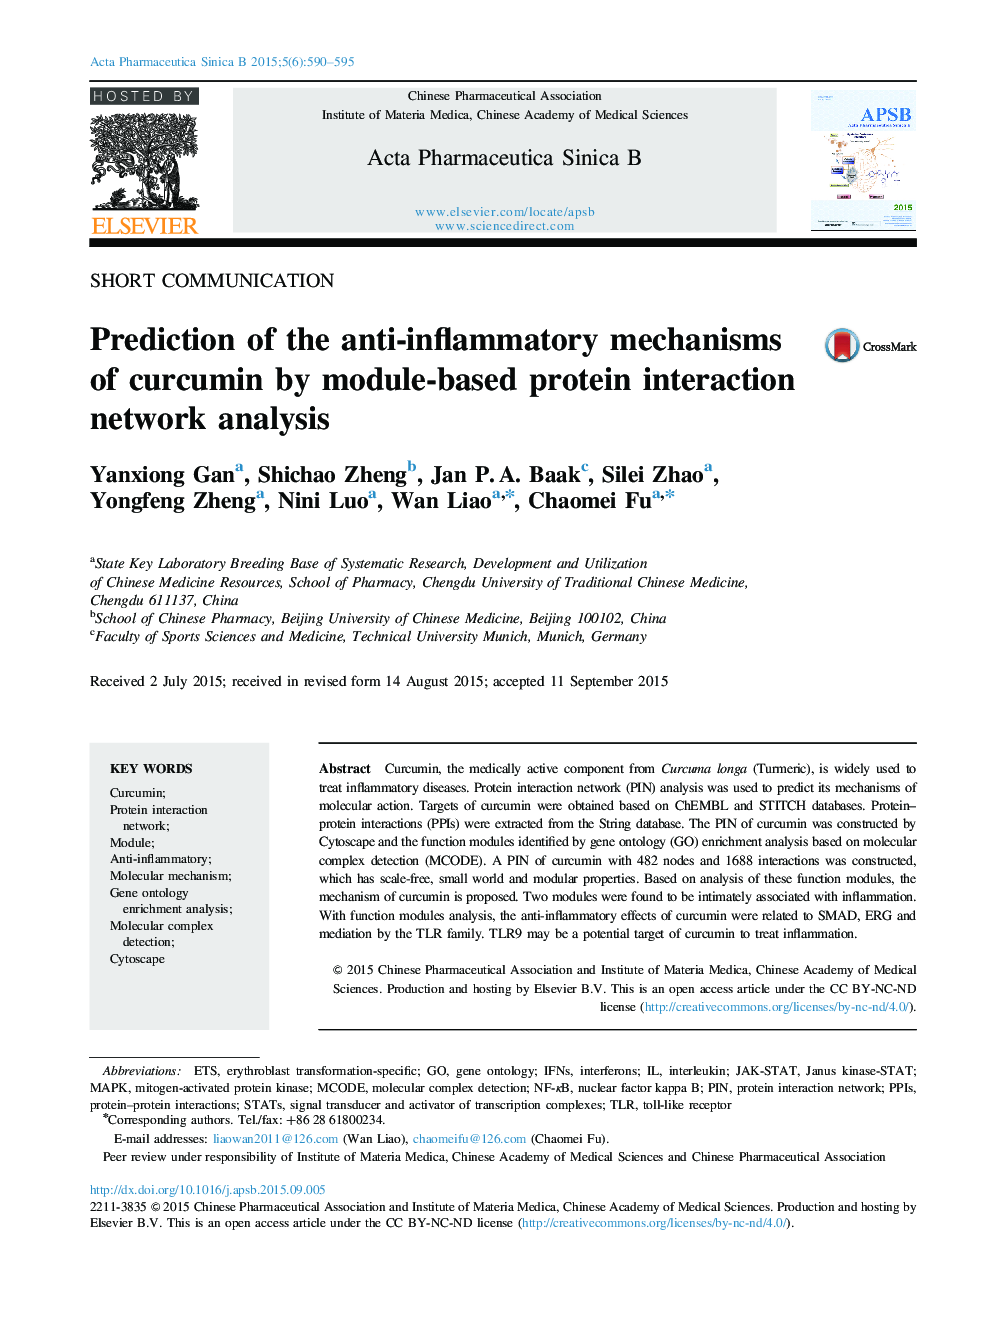 پیش بینی مکانیزم های ضد التهابی کورکومین با تجزیه و تحلیل شبکه متقابل پروتئین مبتنی بر ماژول 